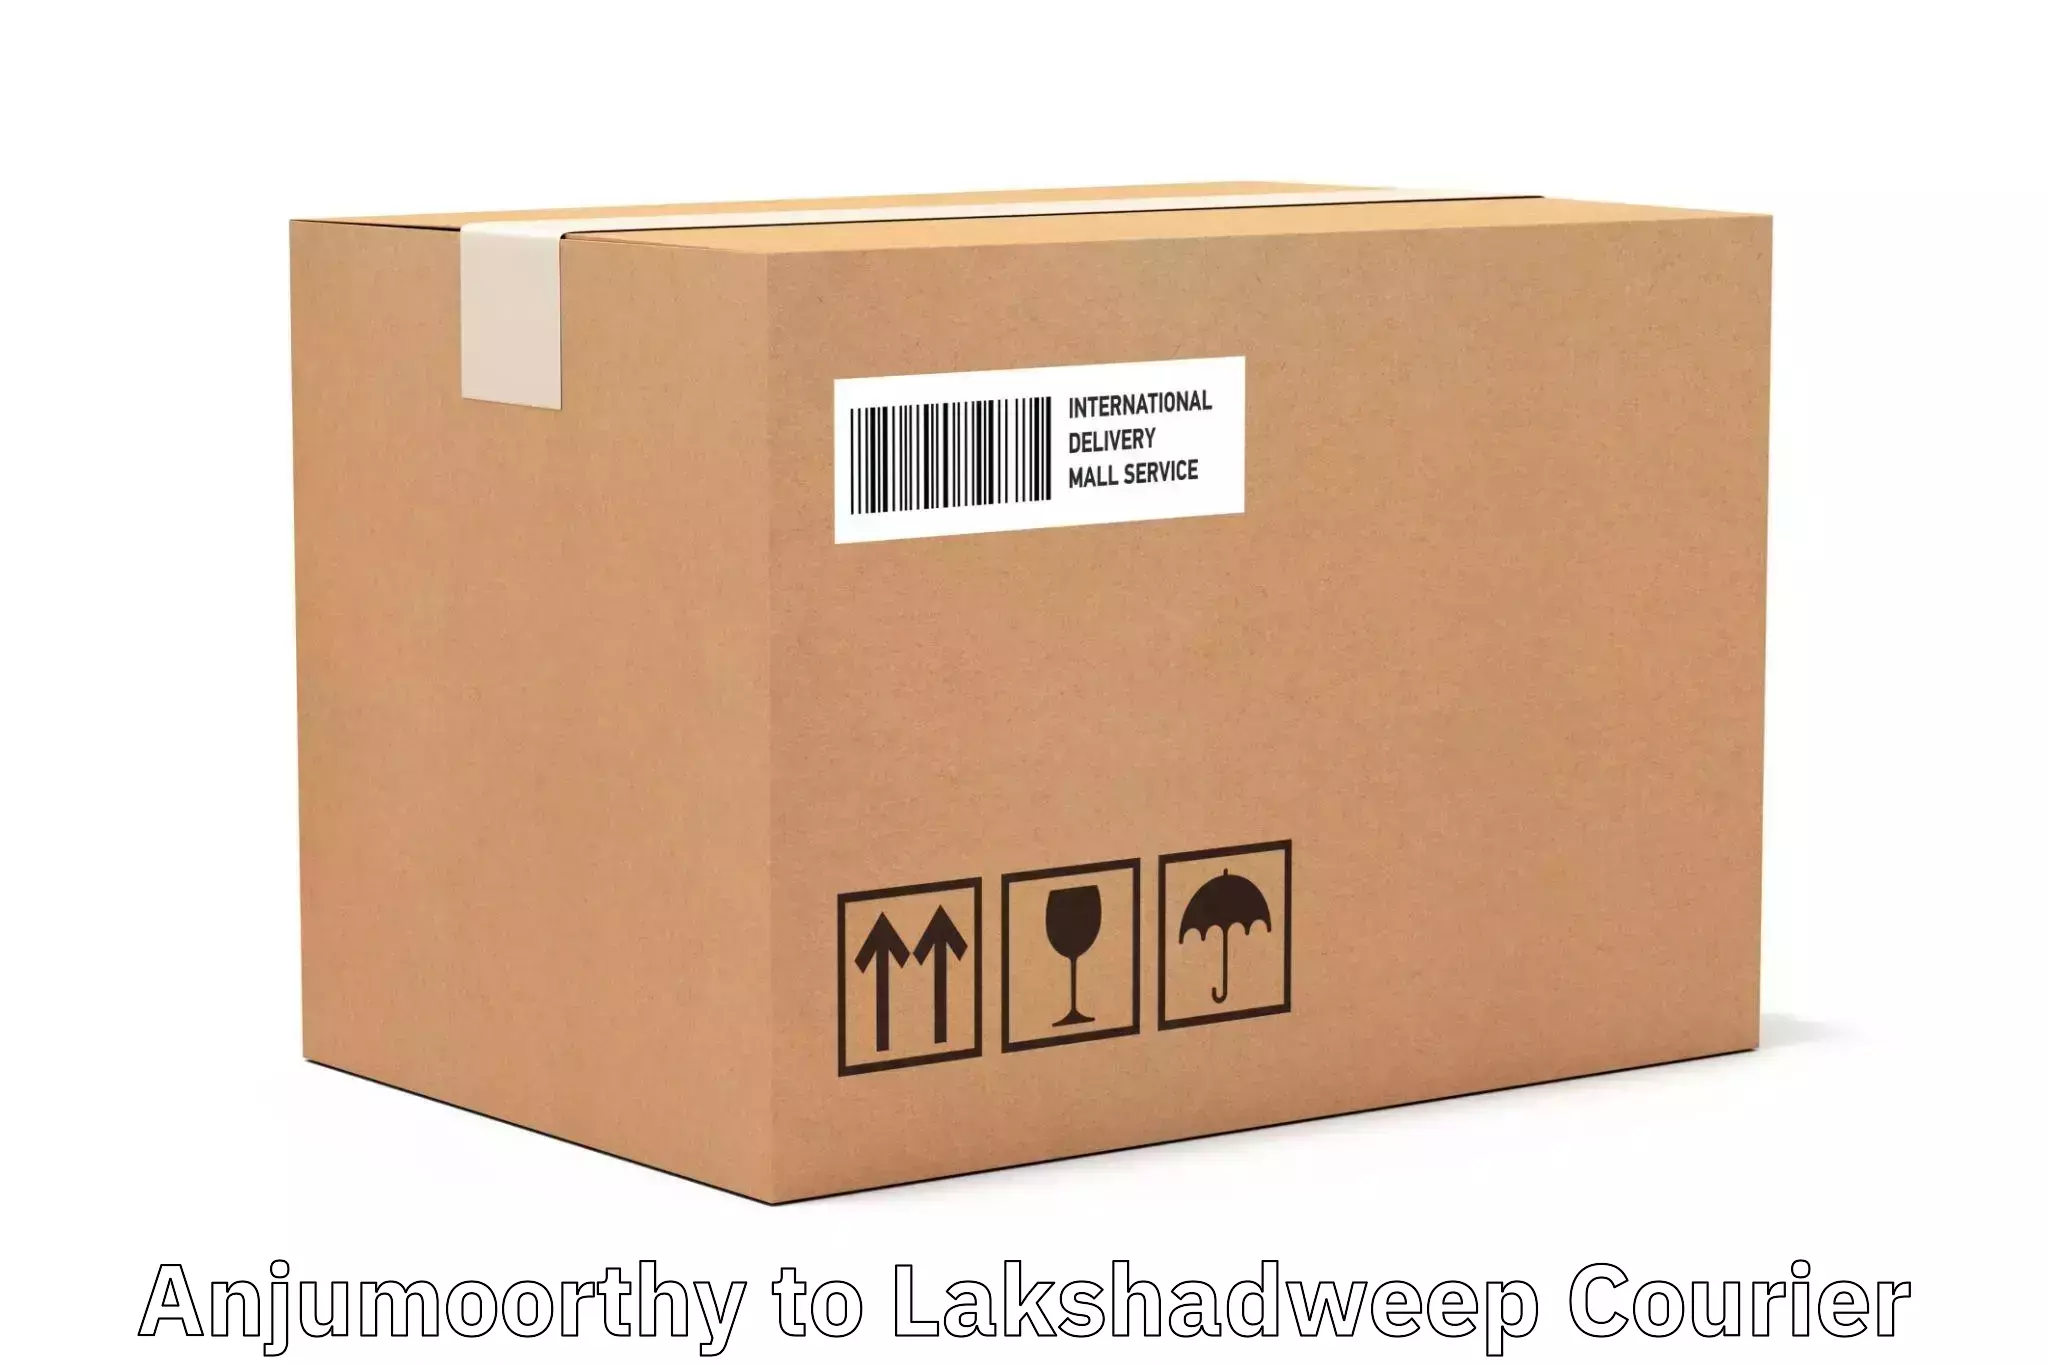 High-speed delivery Anjumoorthy to Lakshadweep